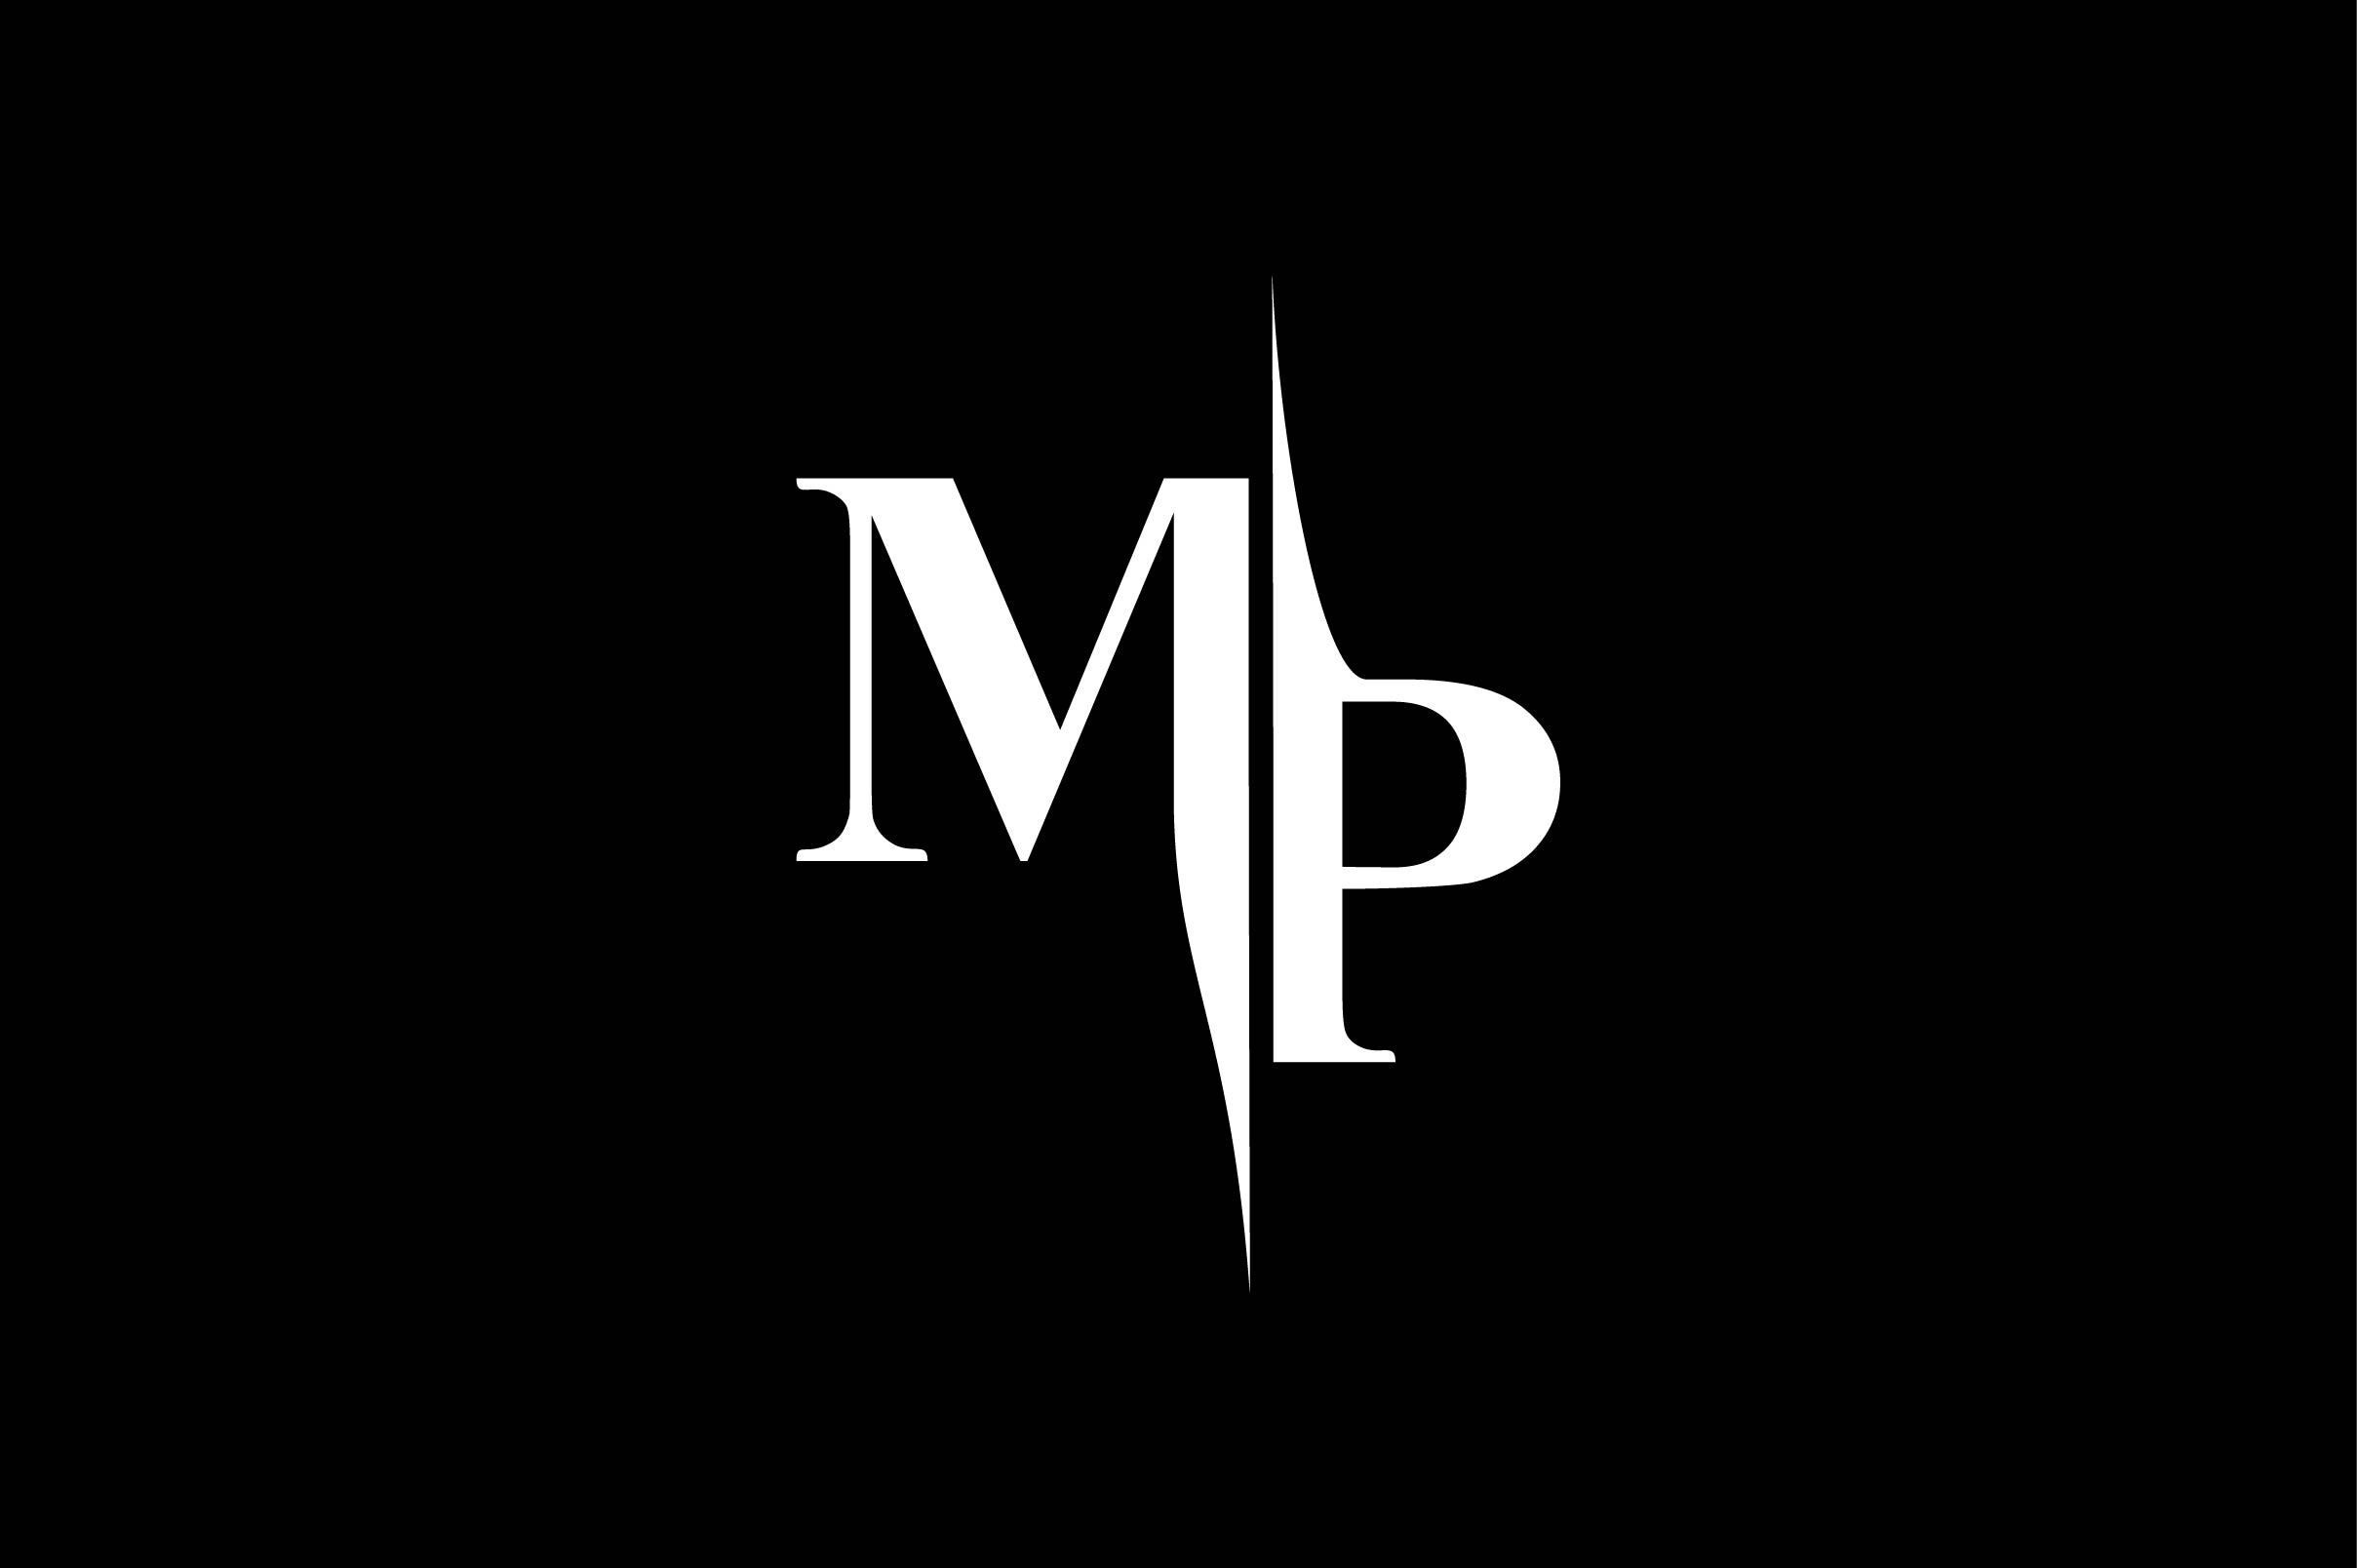 Monogram MP Logo Design By Vectorseller